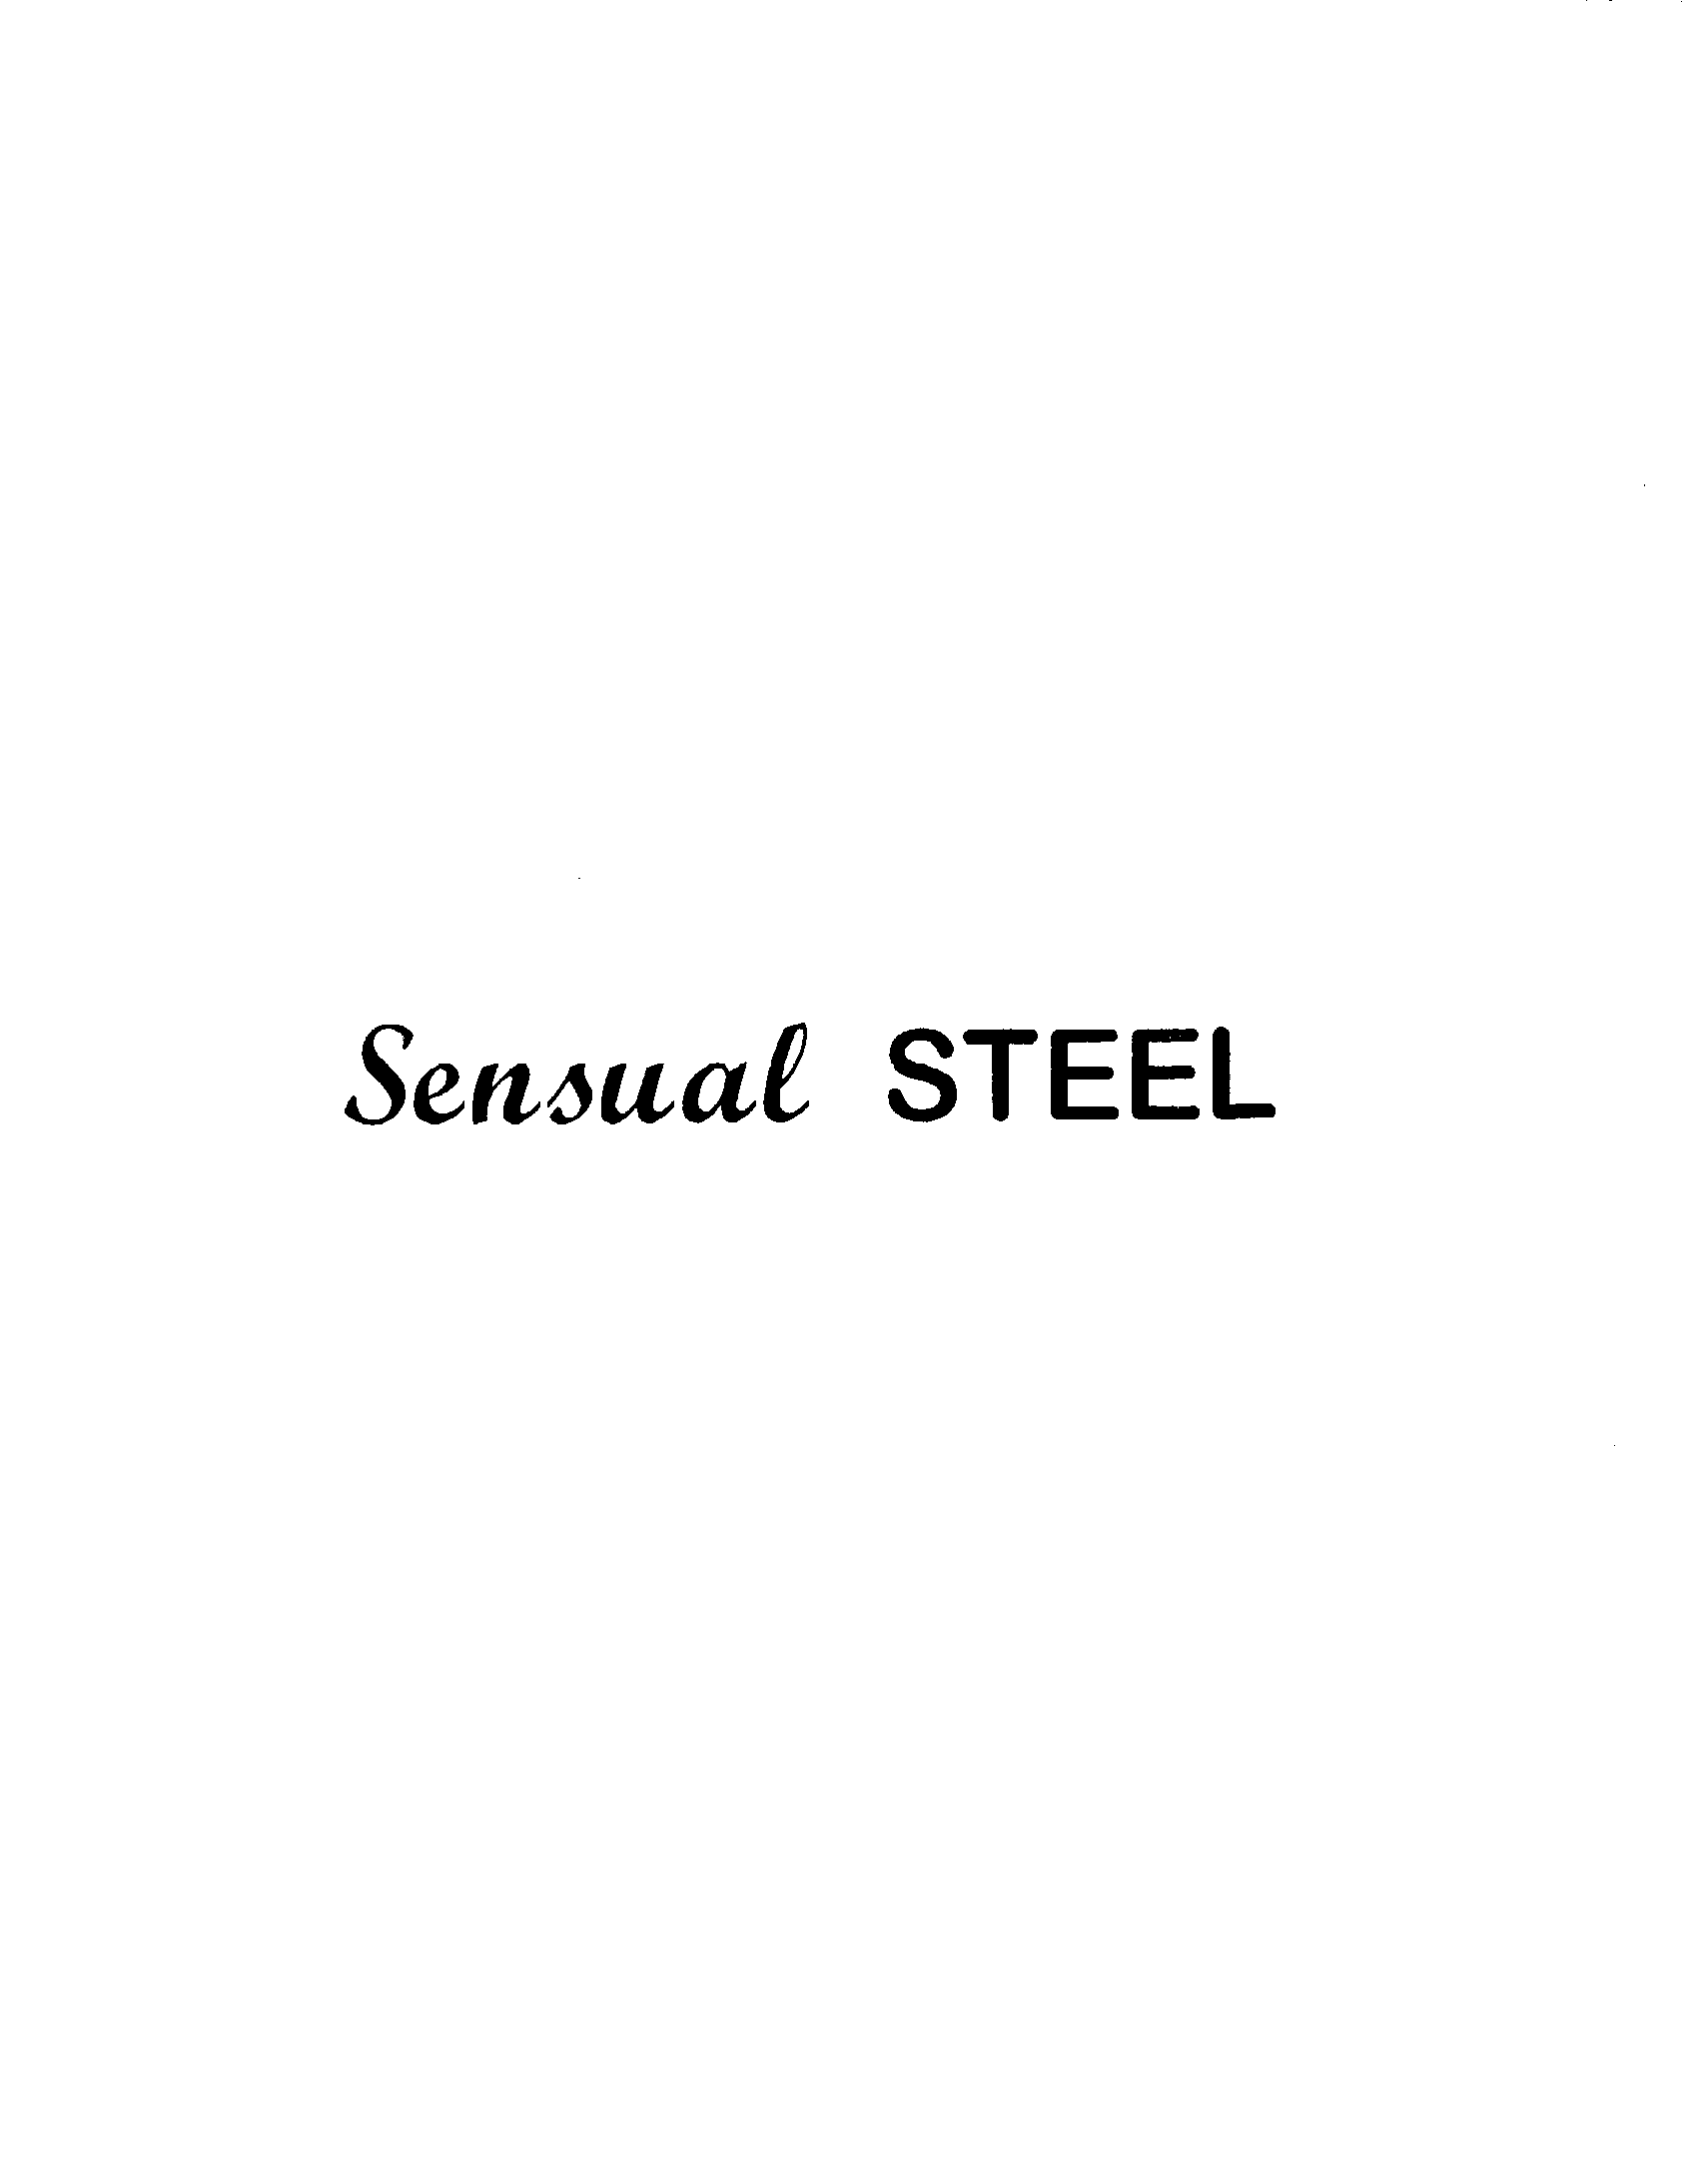  SENSUAL STEEL